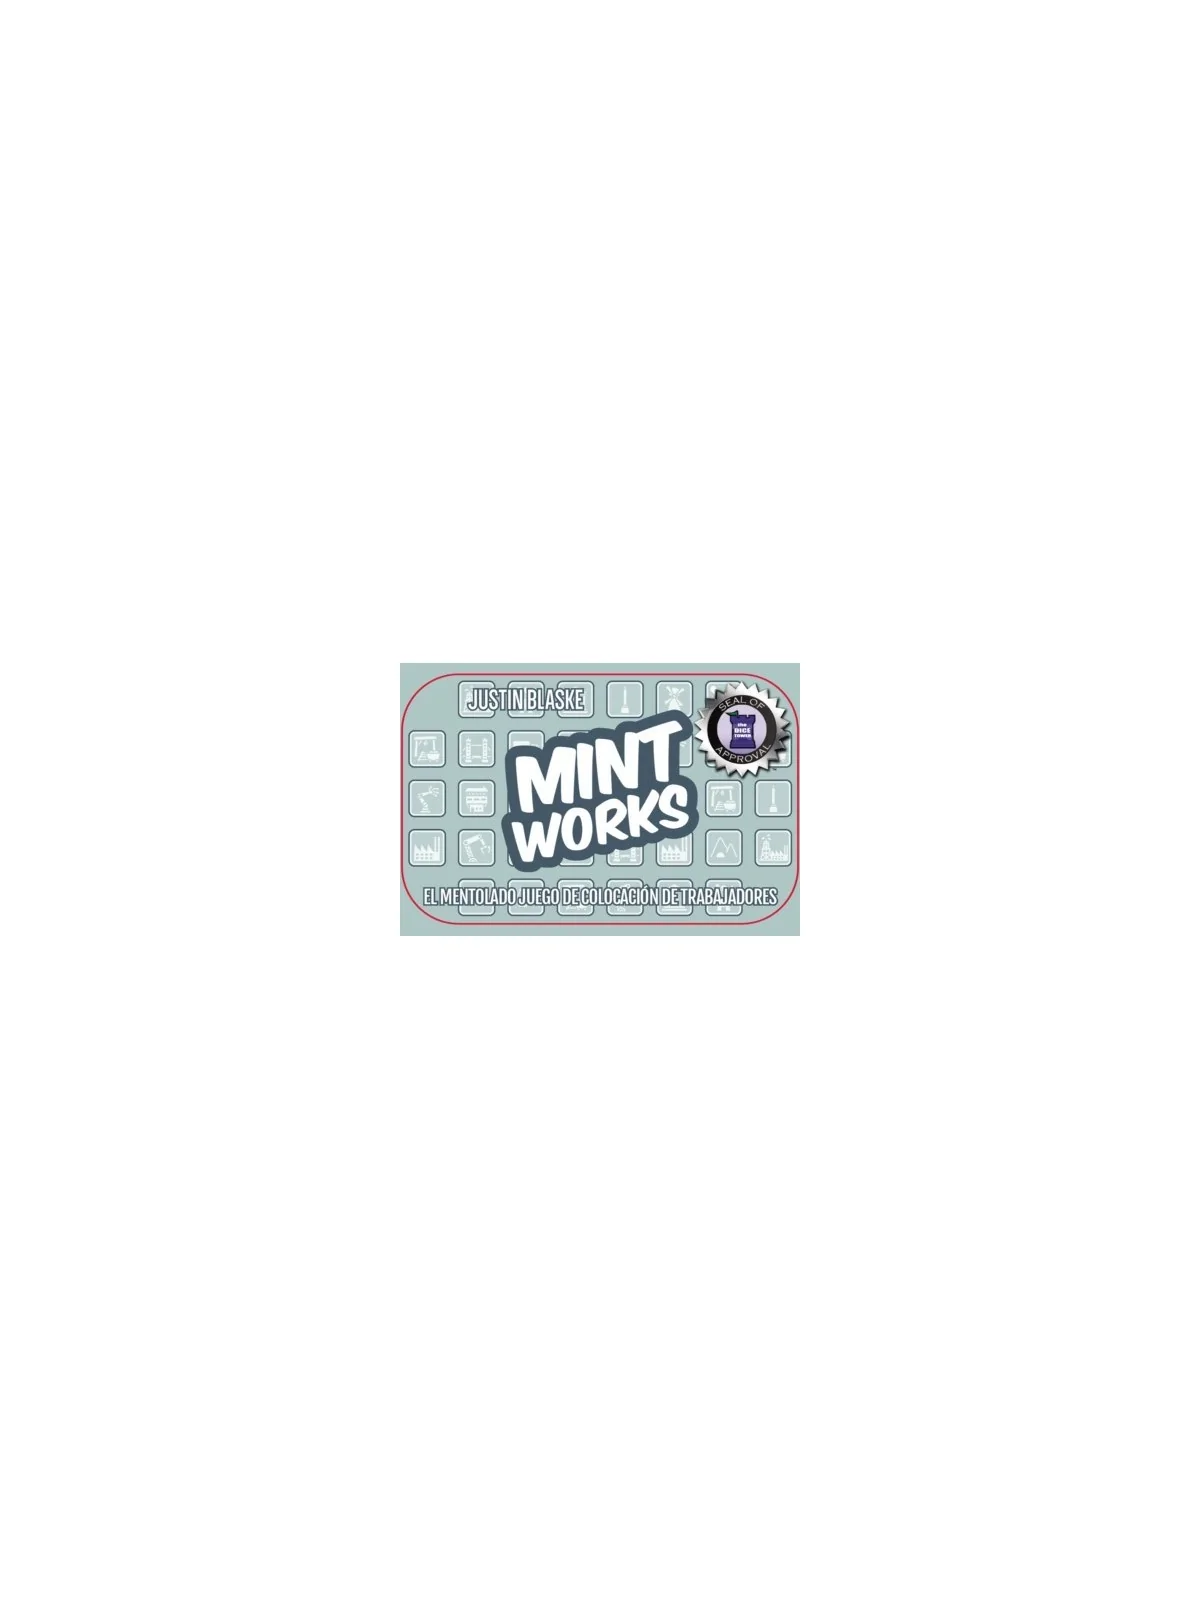 Comprar Mint Works barato al mejor precio 13,50 € de Maldito Games